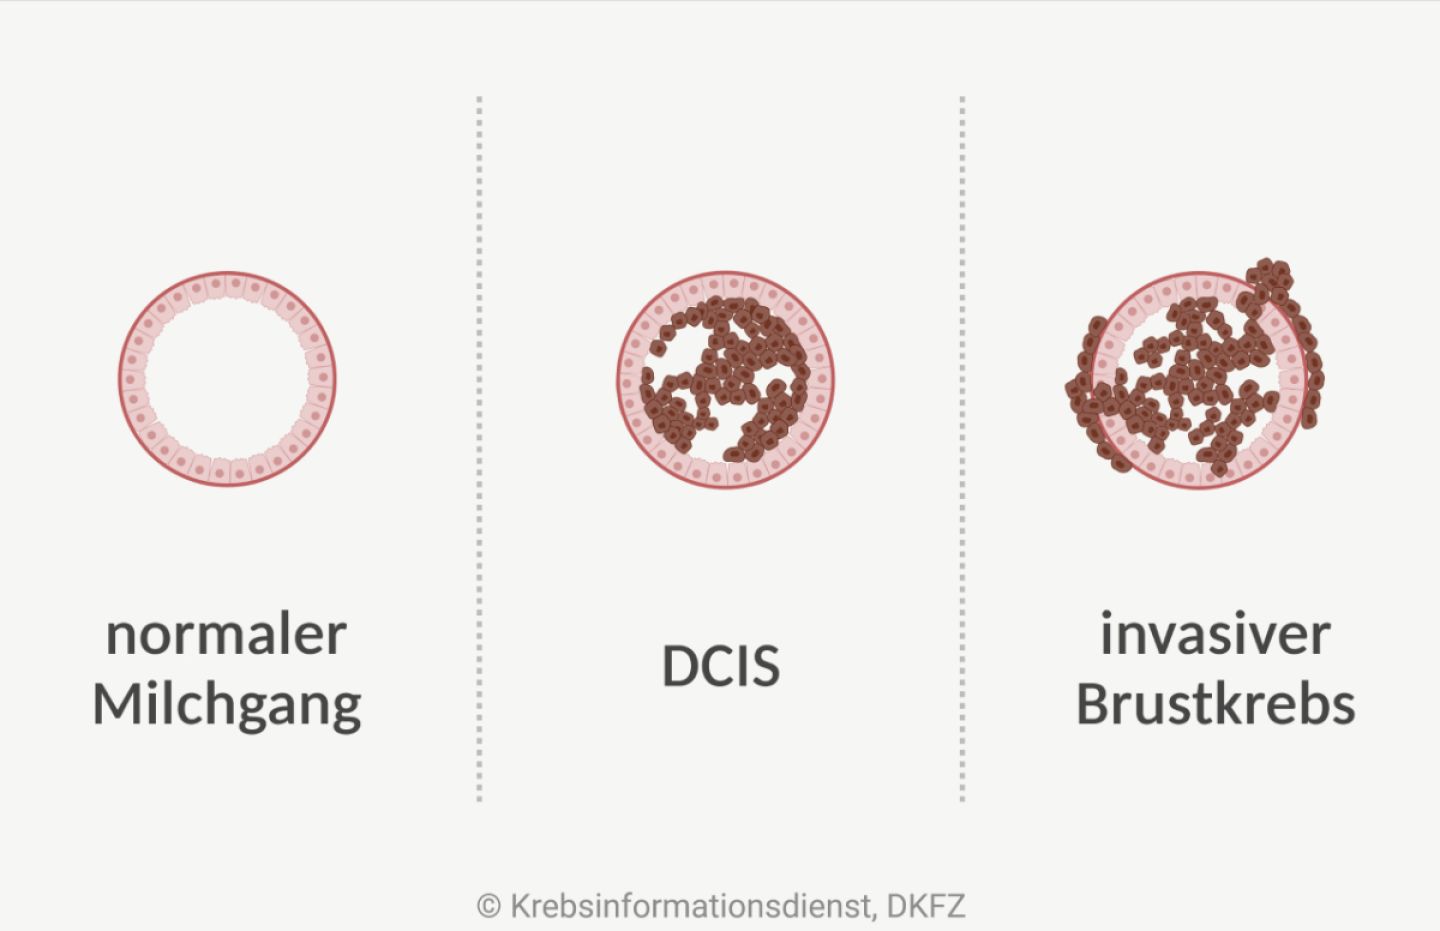 Abgebildet sind Querschnitte eines Milchgangs im Vergleich: normaler Milchgang, DCIS und invasiver Brustkrebs. Bei einem DCIS wachsen die veränderten Zellen nur im Milchgang, bei einem invasiven Brustkrebs durchbrechen sie die Gewebegrenze.